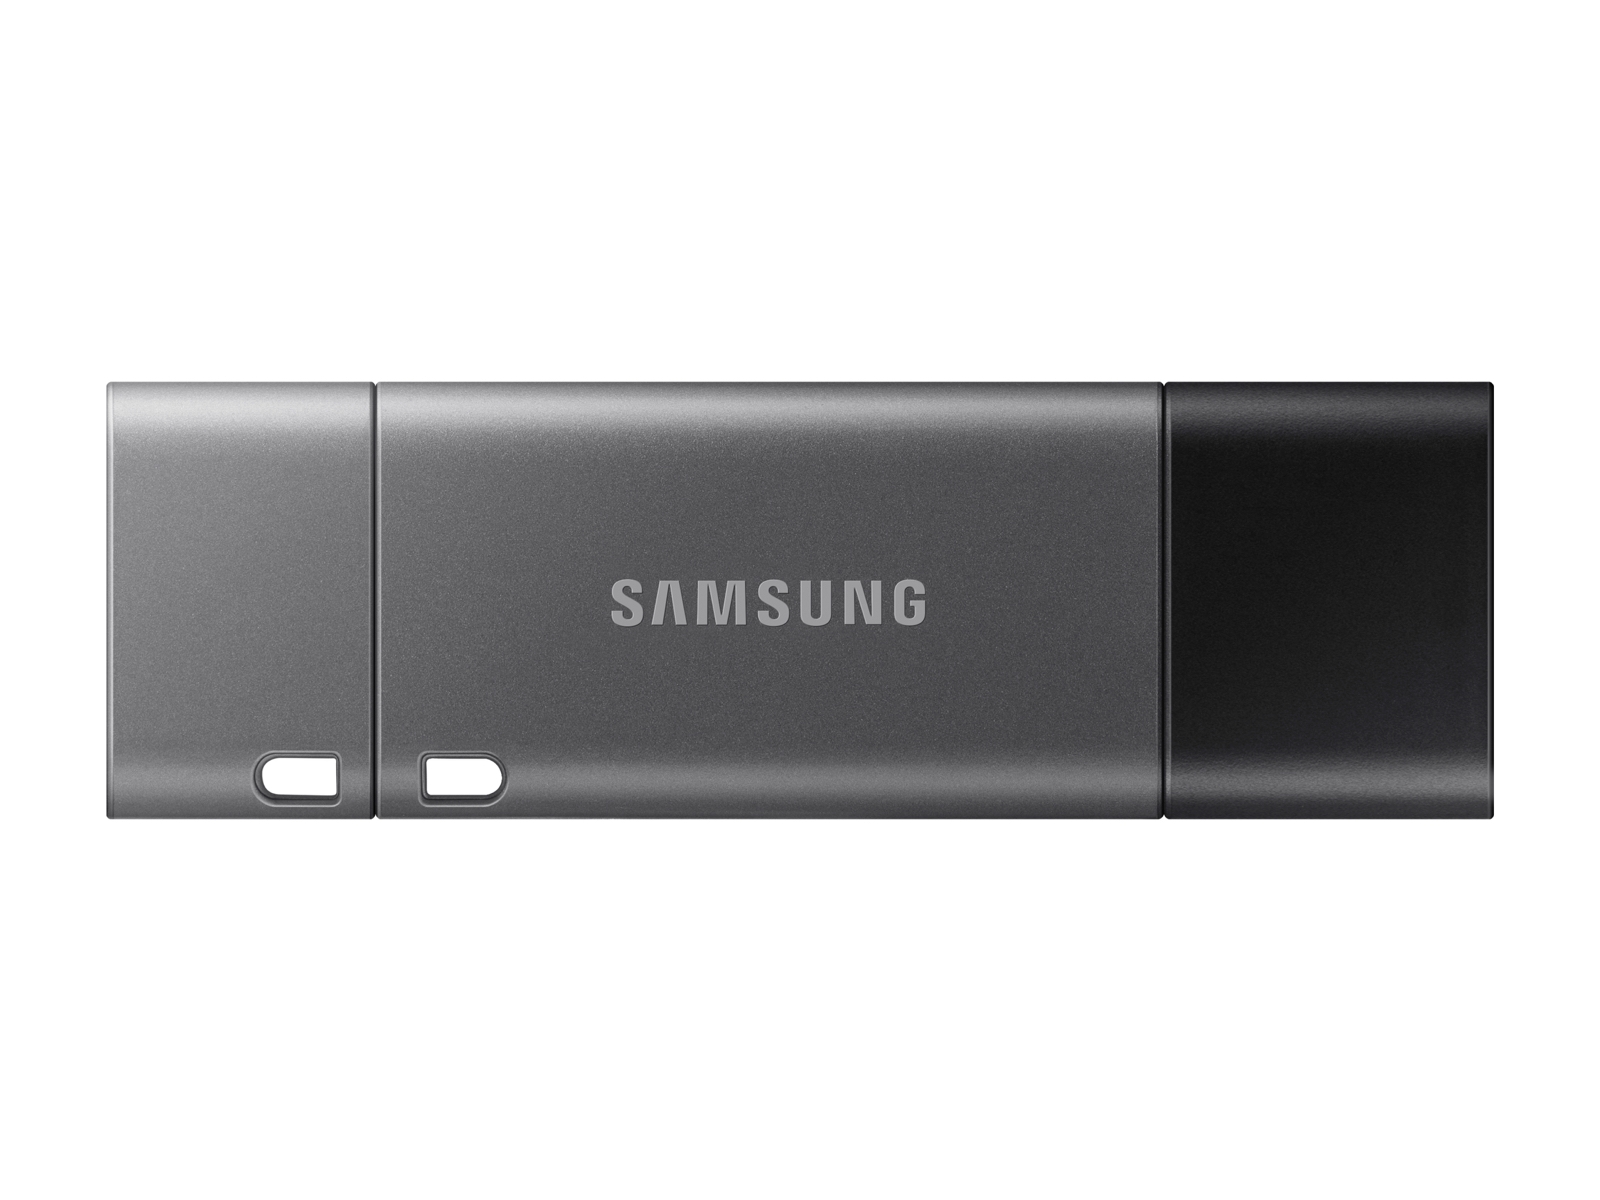 Masculinidad todos los días bordado USB 3.1 Flash Drive DUO Plus 64GB Memory & Storage - MUF-64DB/AM | Samsung  US